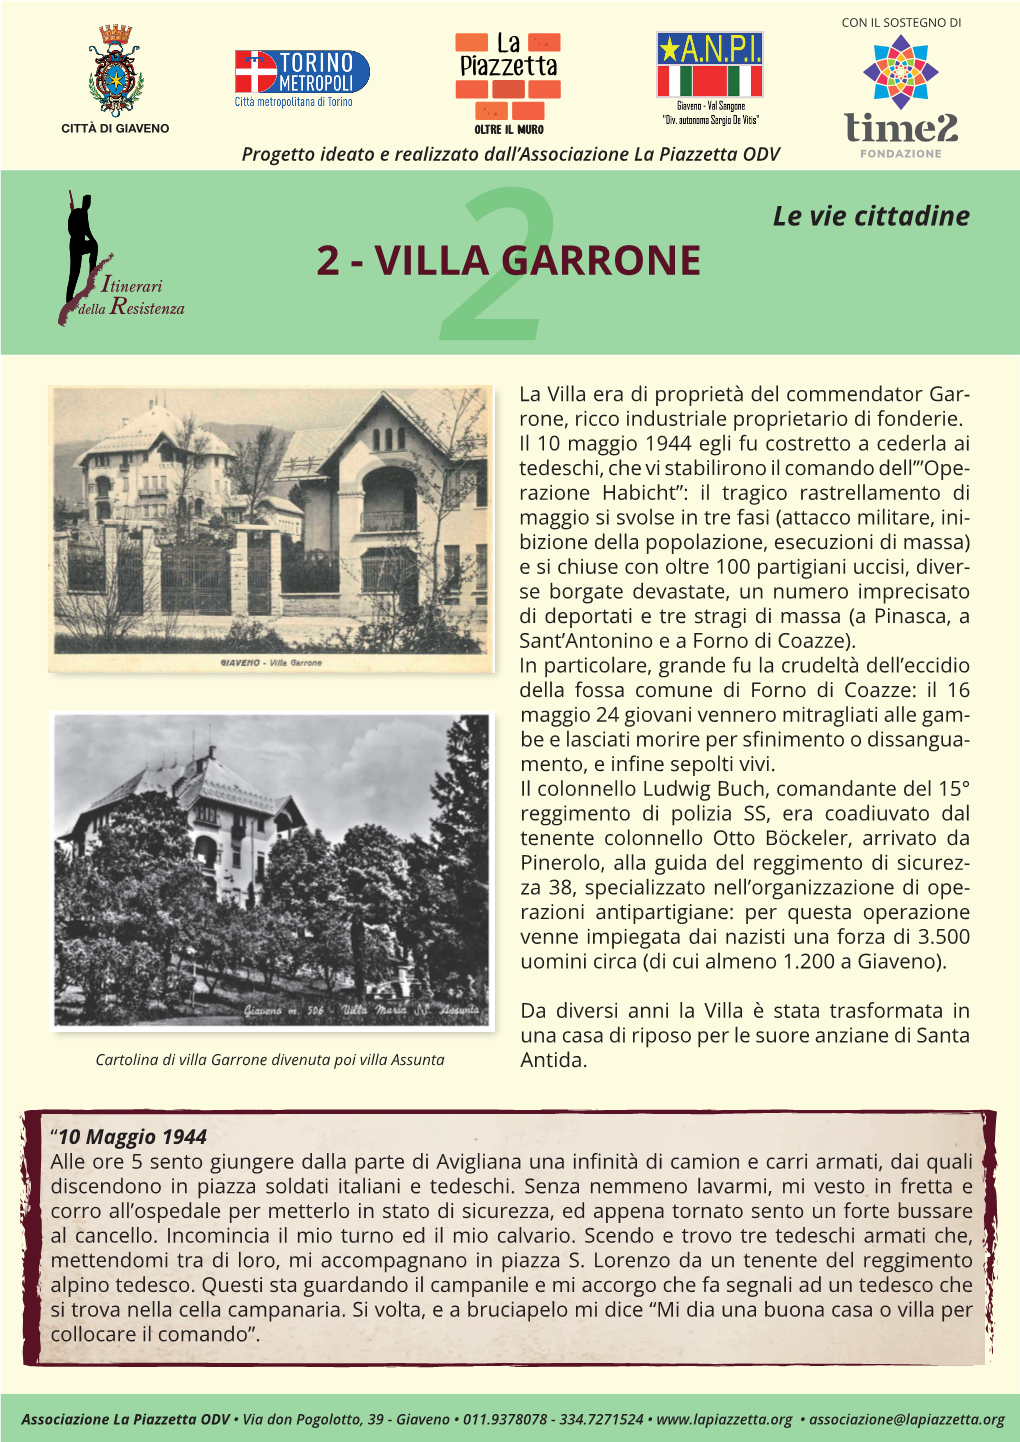 2 - VILLA2 GARRONE La Villa Era Di Proprietà Del Commendator Gar- Rone, Ricco Industriale Proprietario Di Fonderie